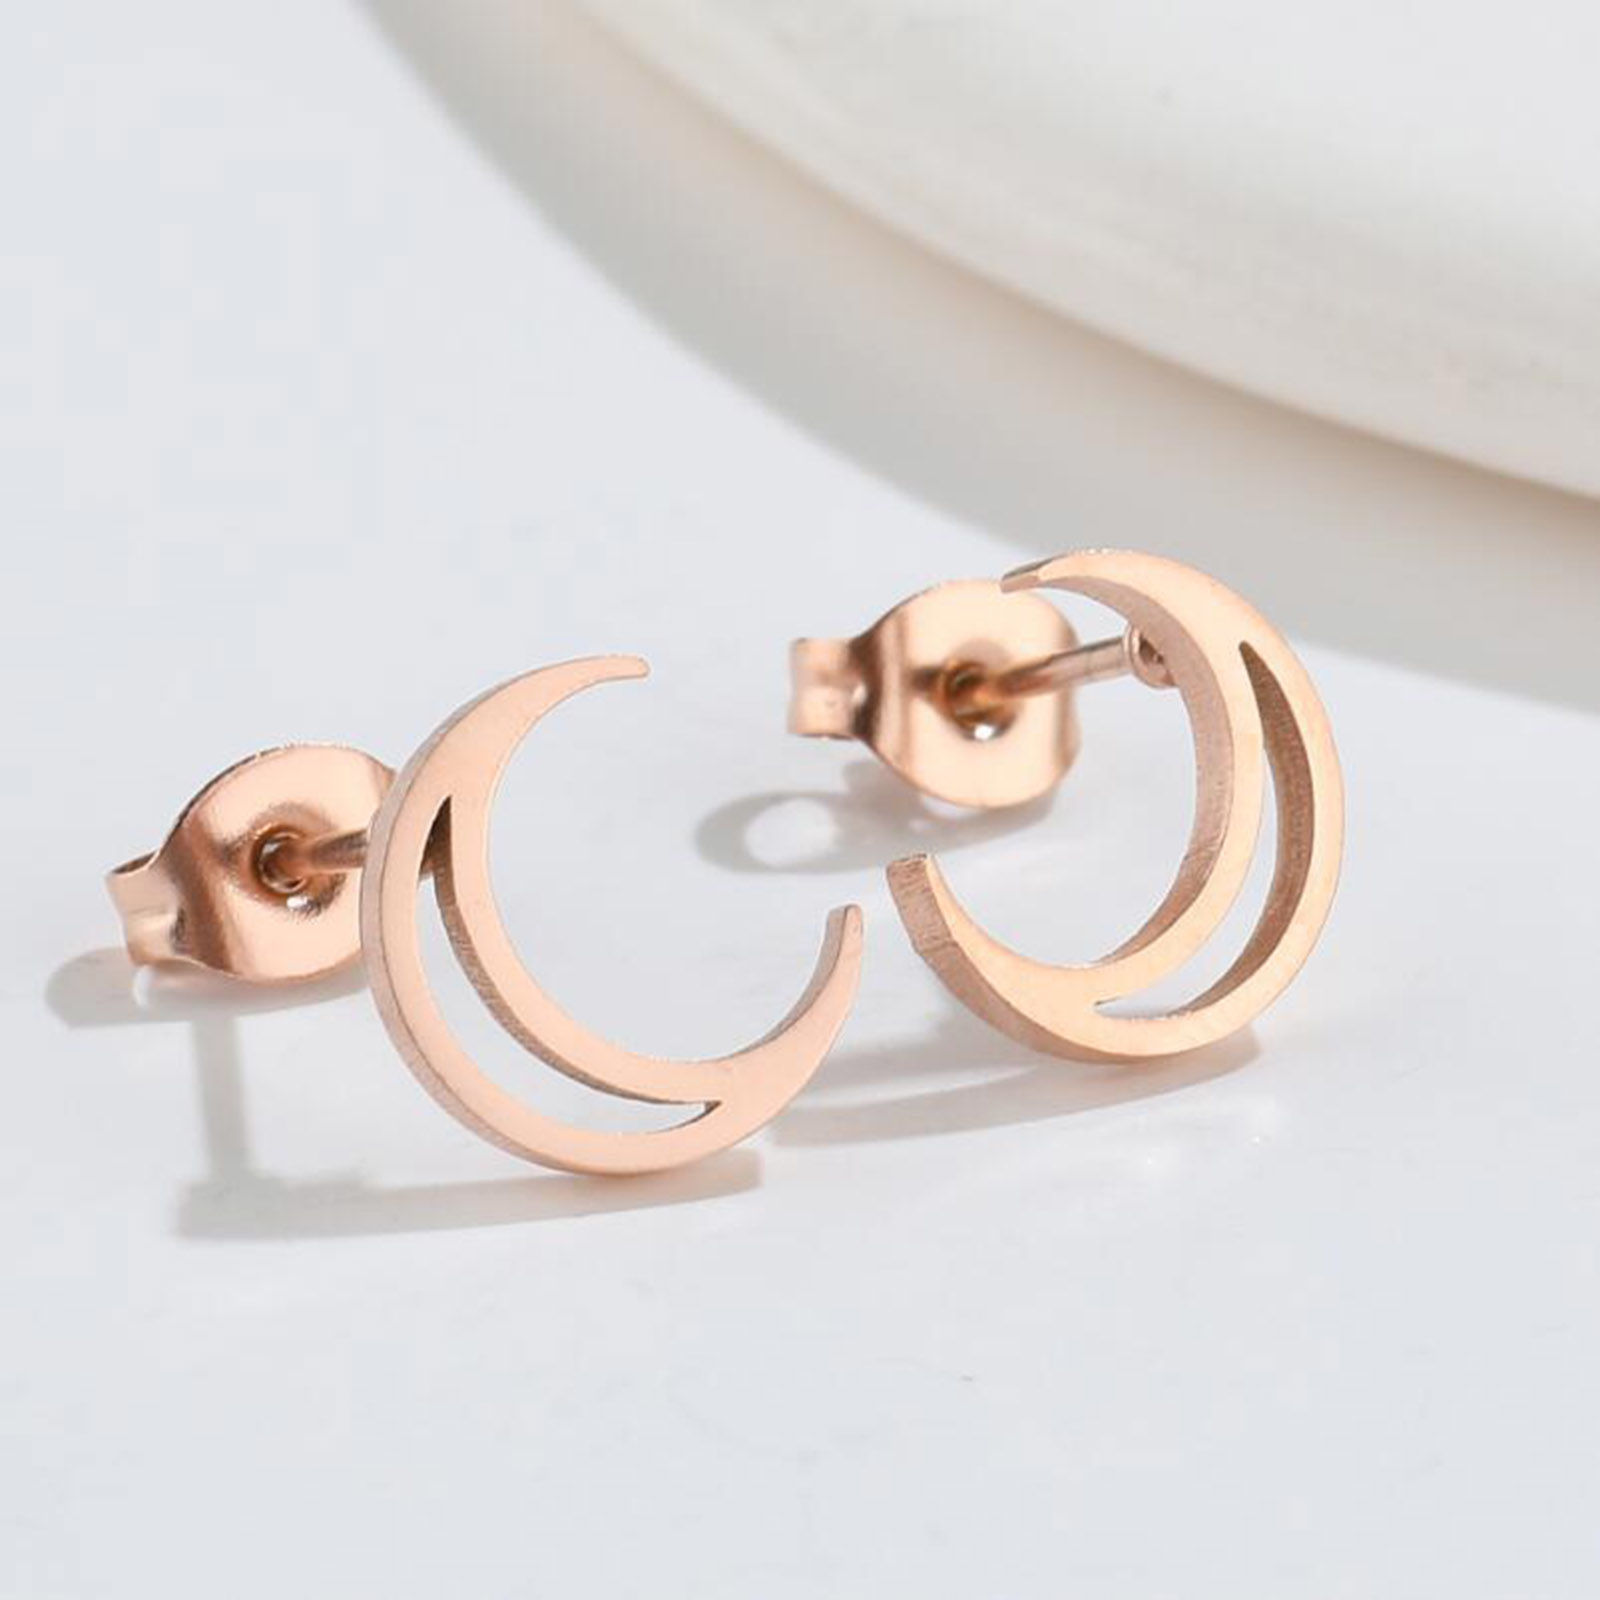 Bild von Titan Edelstahl Ins Stil Asymmetrische Ohrringe Bunt 2 Paare